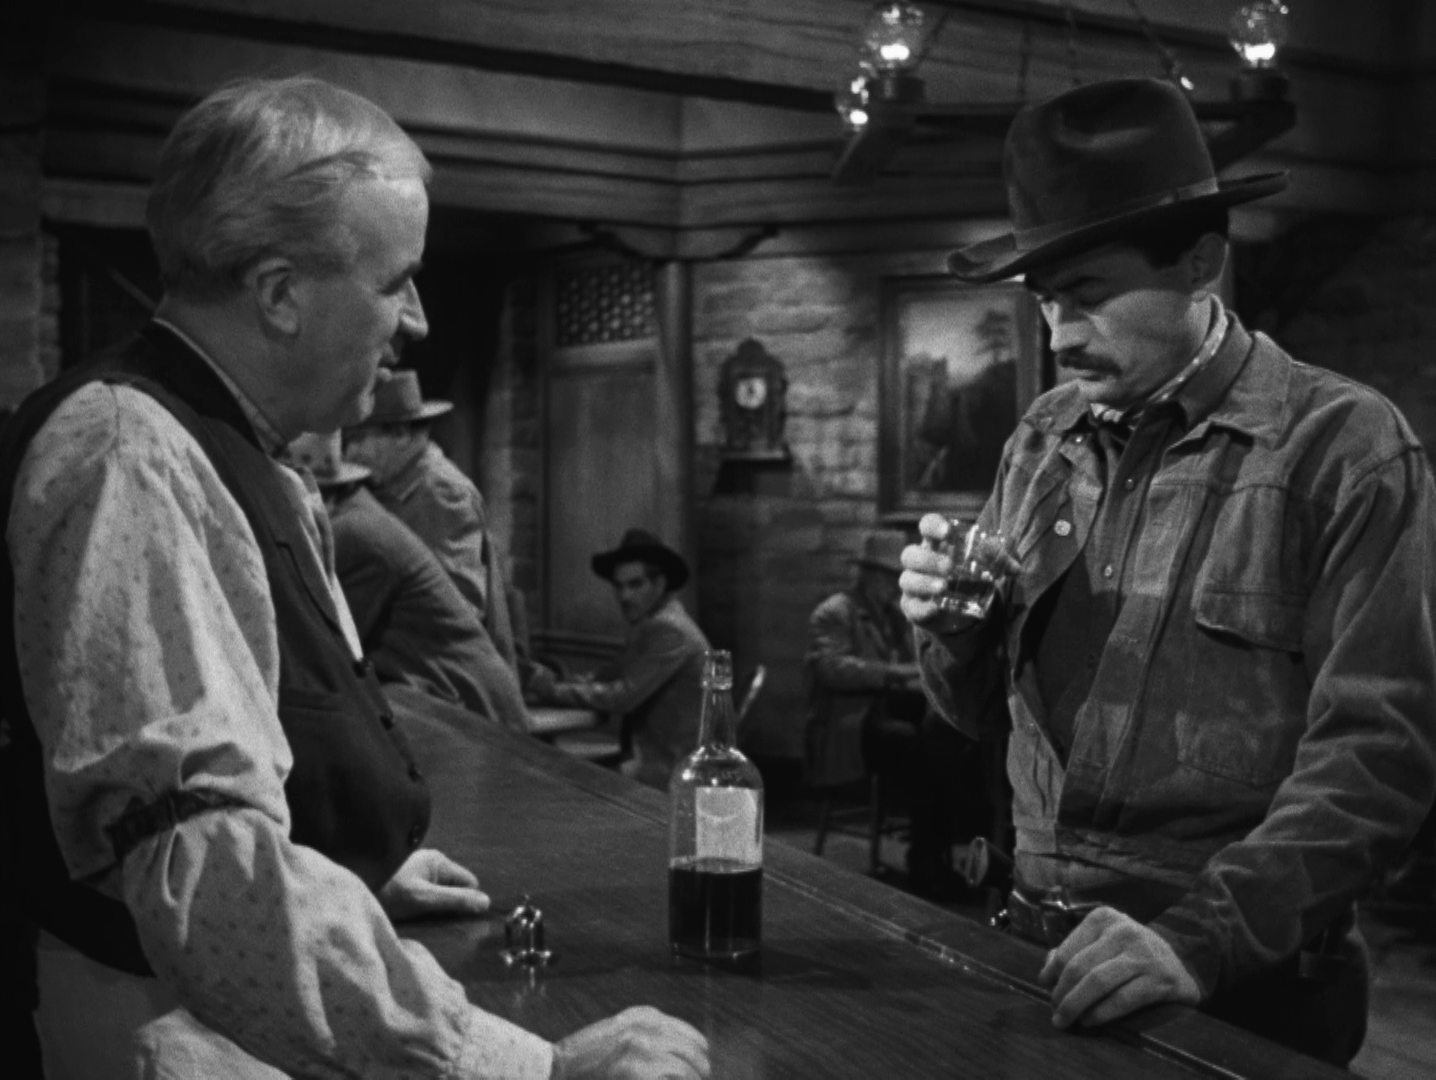 Schwarz-Weiß-Szene: Gregory Peck als Jimmy Ringo, der an der Theke eines Saloons im Beisein des Barkeepers in ein Whiskeyglas starrt, vor ihm auf den Tresen steht eine halbvolle Flasche.